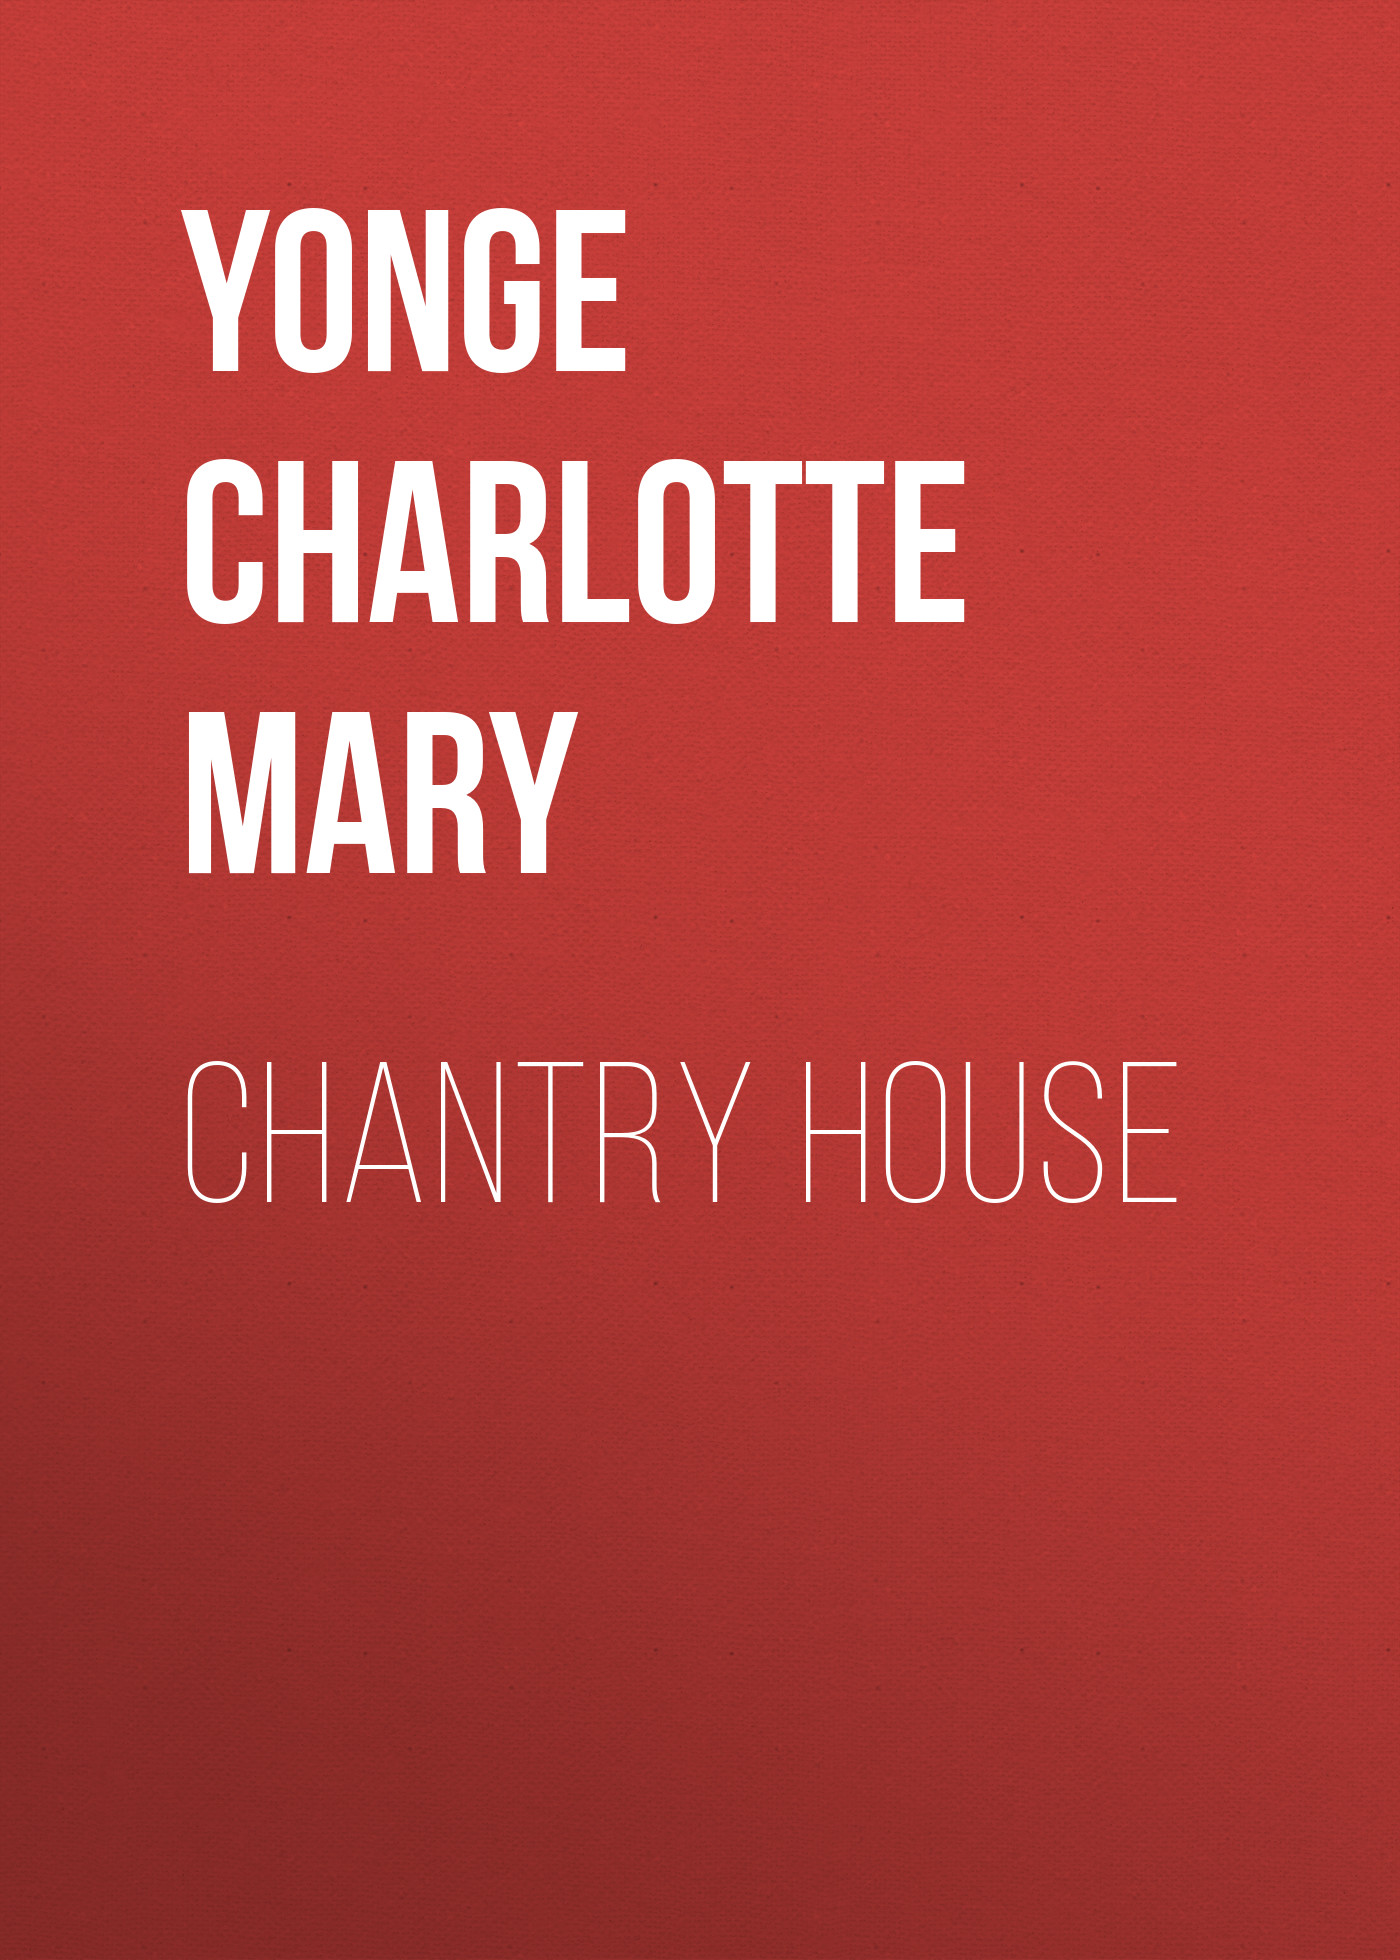 Книга Chantry House из серии , созданная Charlotte Yonge, может относится к жанру Зарубежная классика, Литература 19 века, Европейская старинная литература, Зарубежная старинная литература. Стоимость электронной книги Chantry House с идентификатором 36095581 составляет 0 руб.